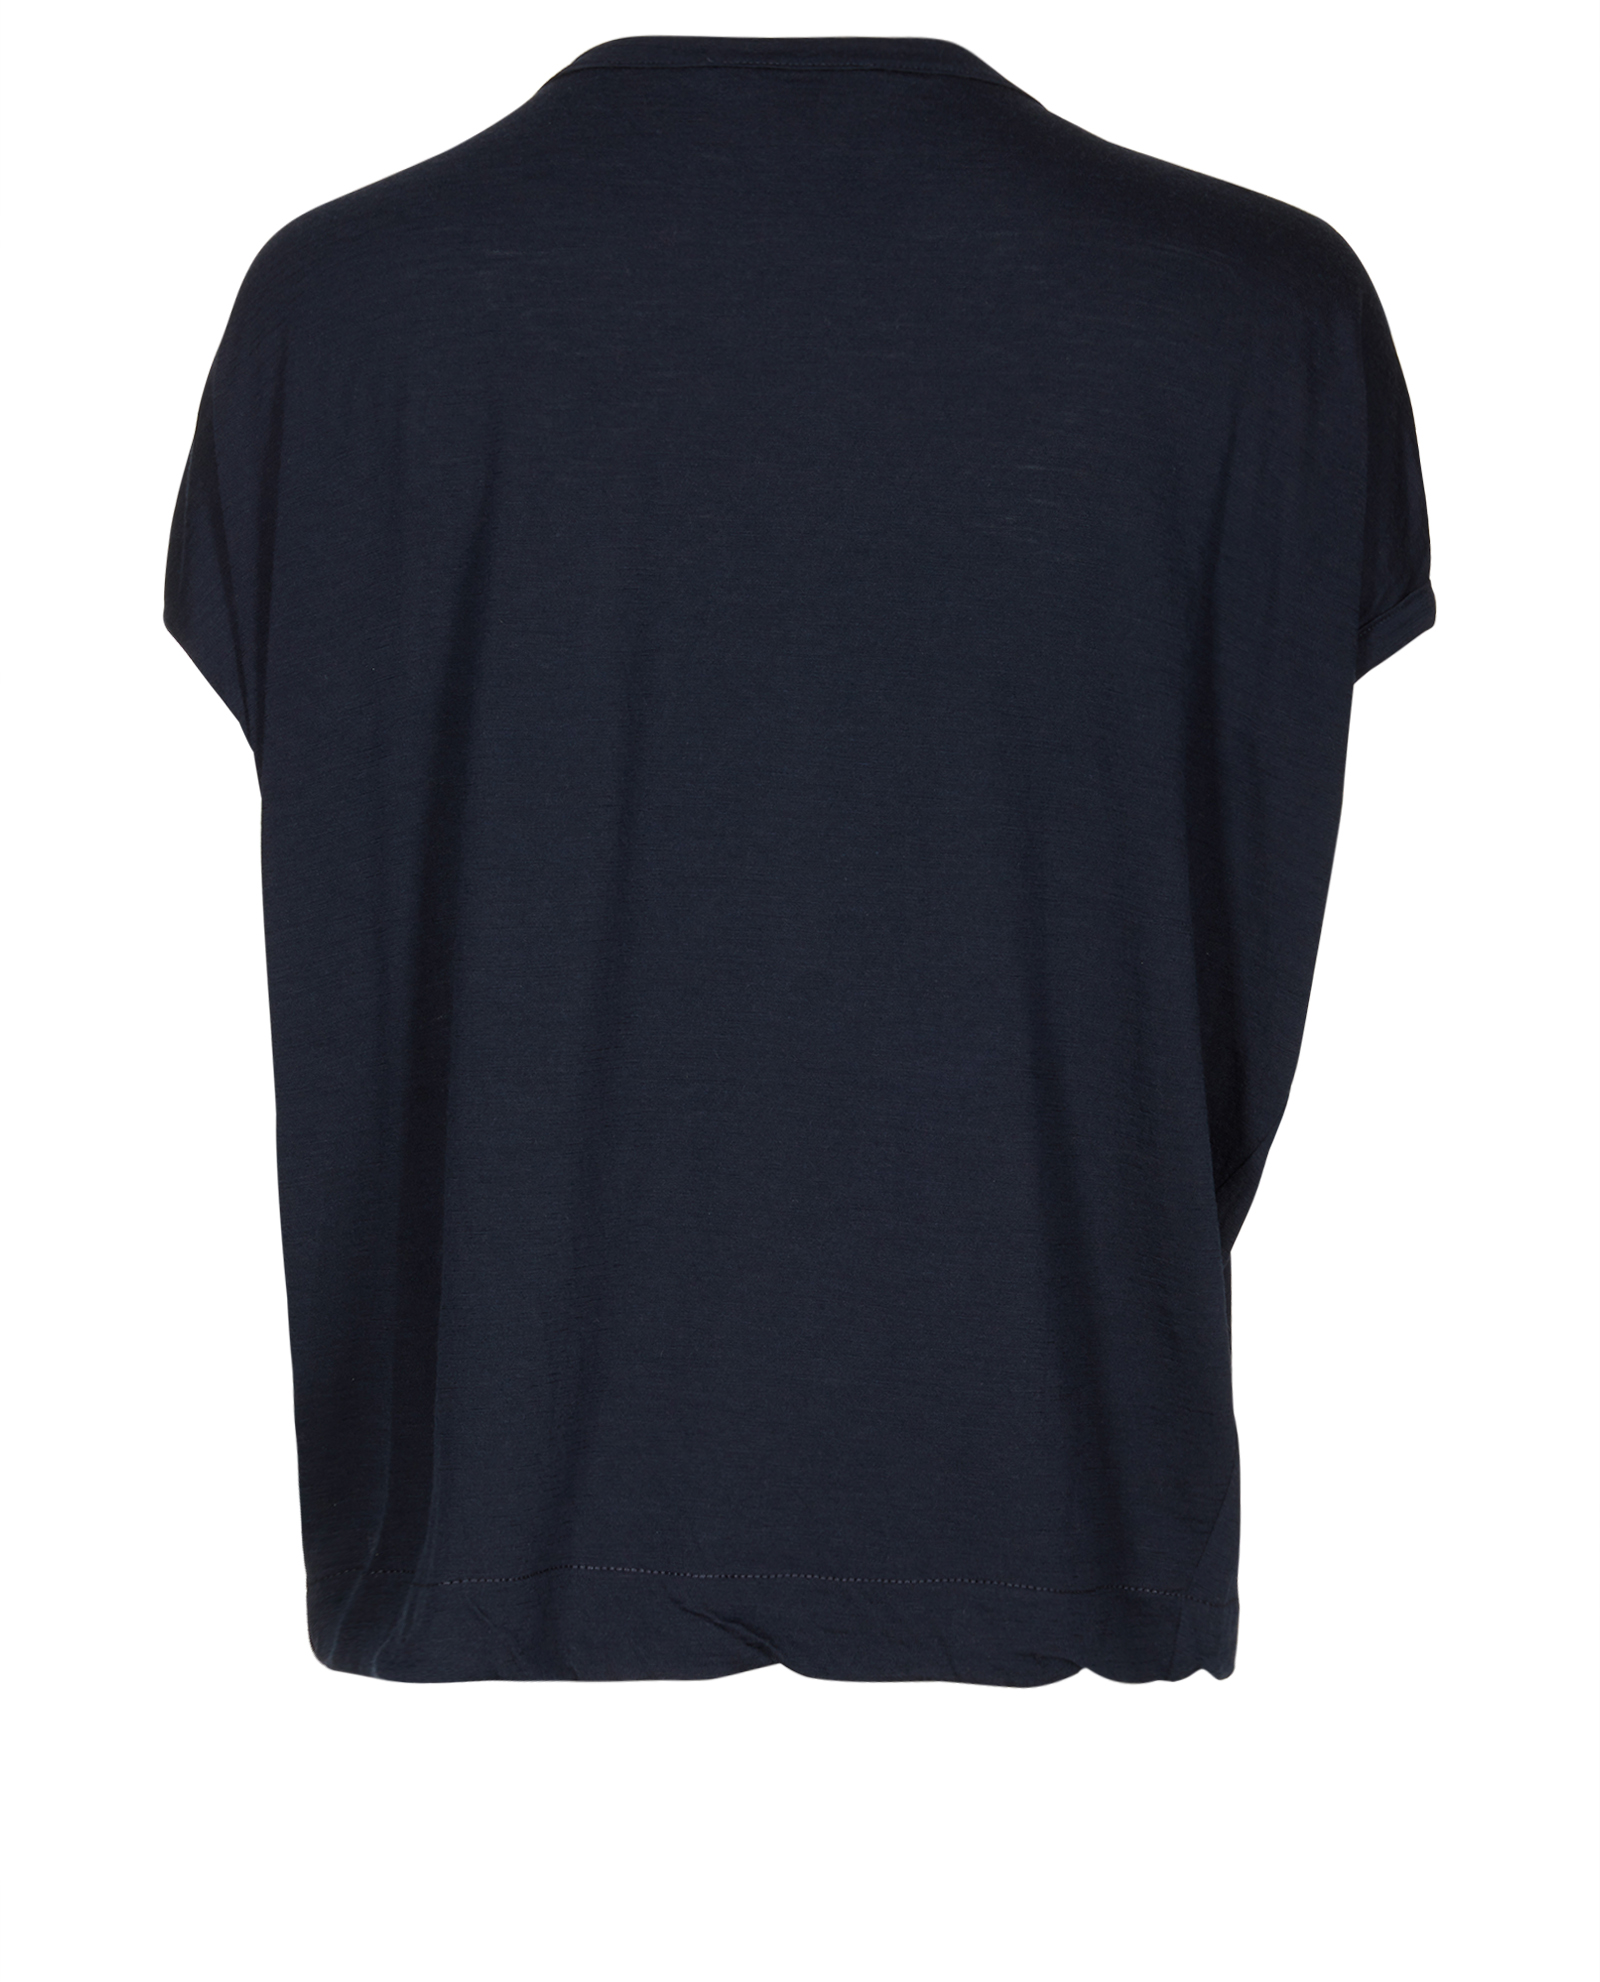 Globe LV Short Sleeve T-Shirt Black